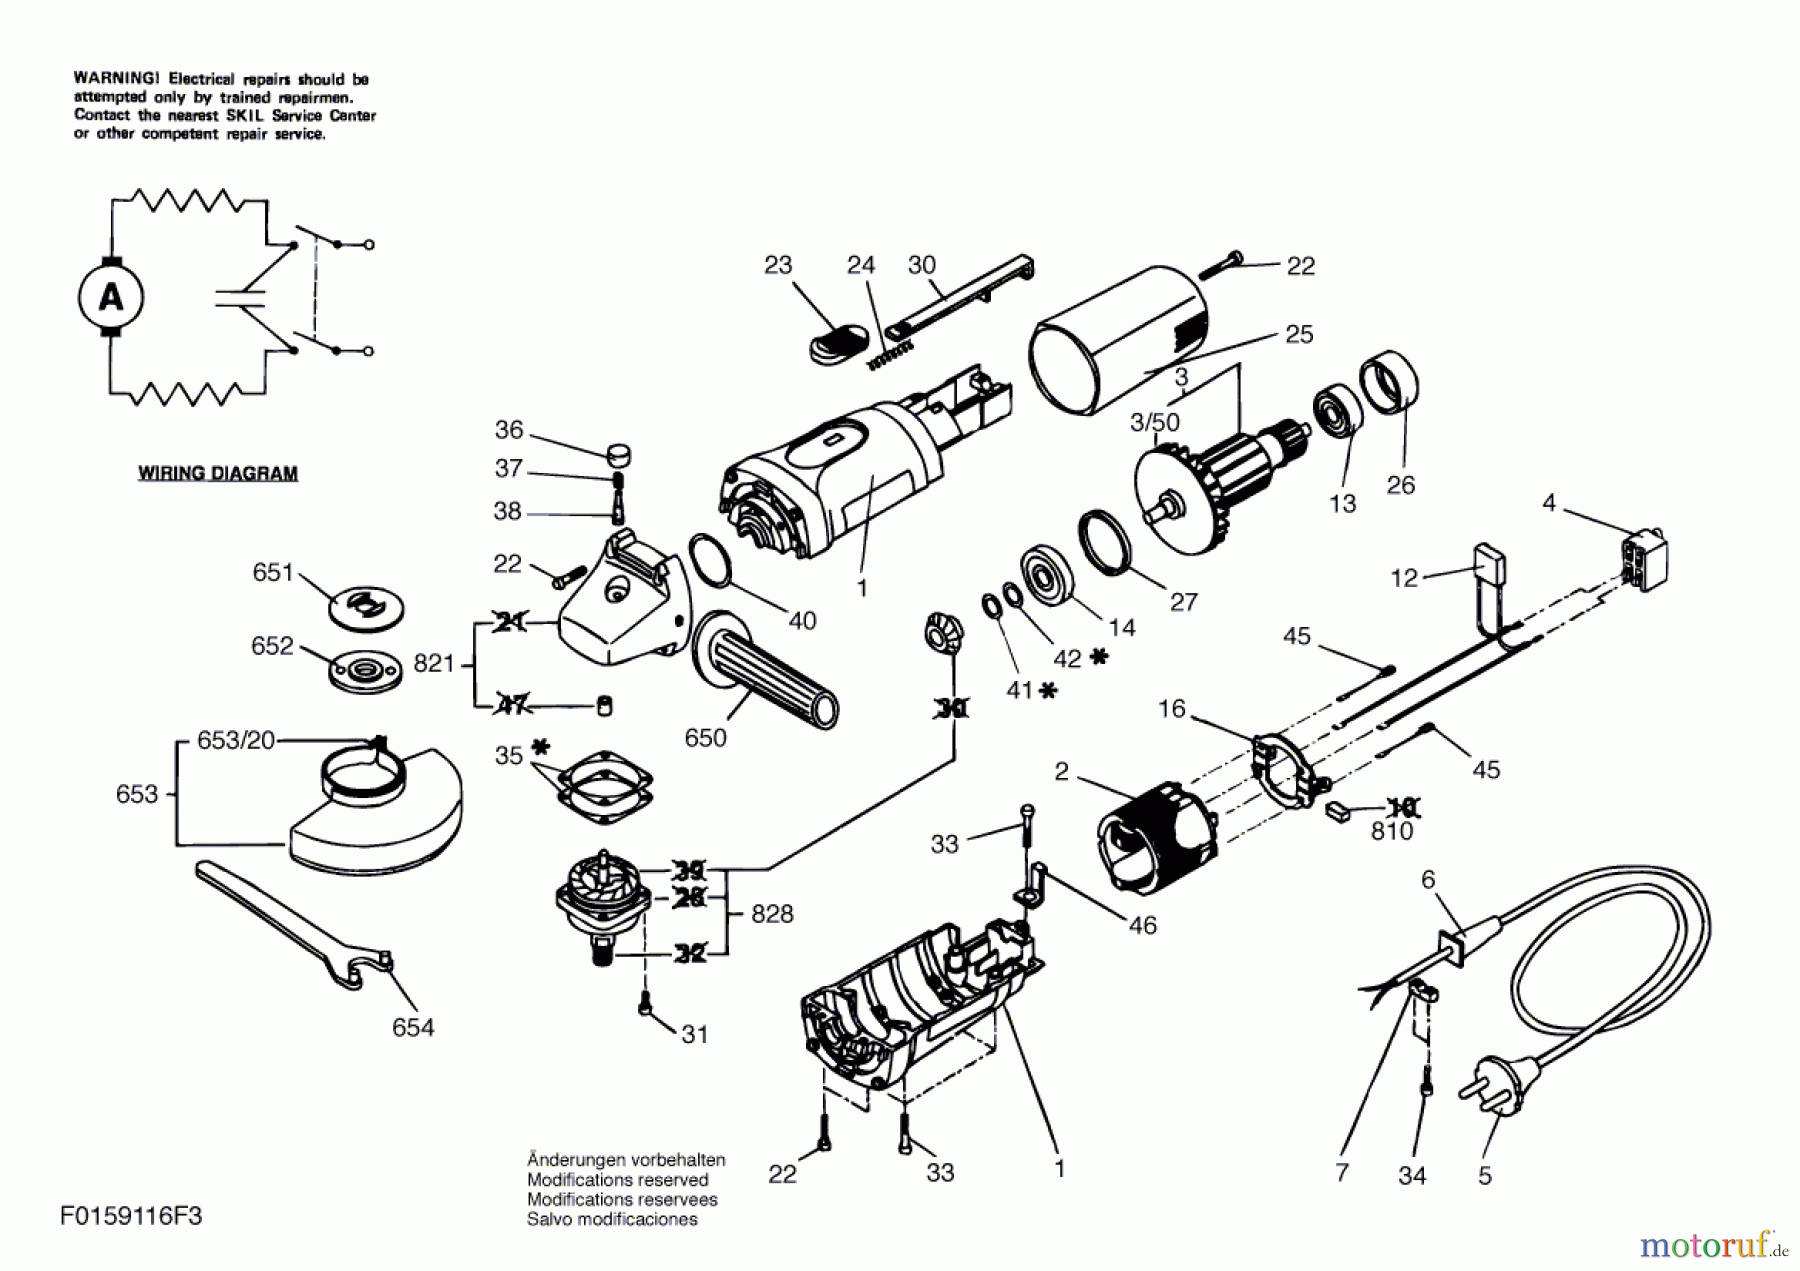  Bosch Werkzeug Winkelschleifer 9116 Seite 1